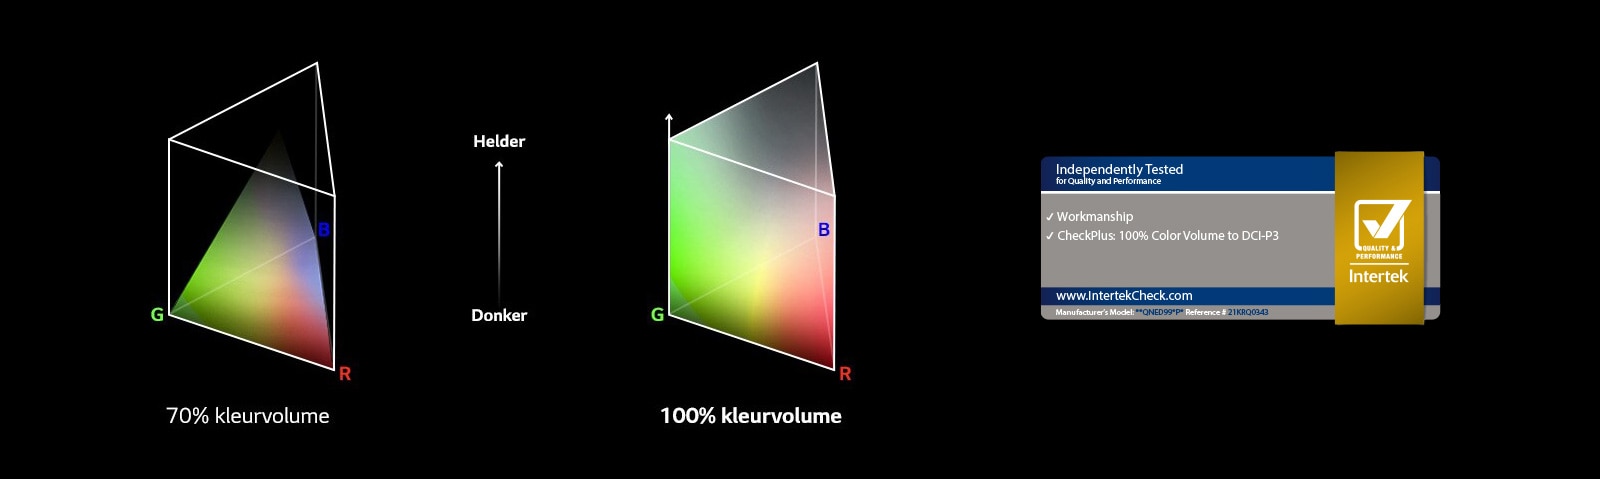 Er zijn twee RGB-kleurendistributiegrafieken in driehoekige poolvorm. De linkse is 70% kleurvolume en de rechtse is 100% kleurvolume dat volledig verdeeld is. De tekst tussen de twee grafieken zegt Helder en Donker. Er staat een door Intertek gecertificeerd logo recht onder.